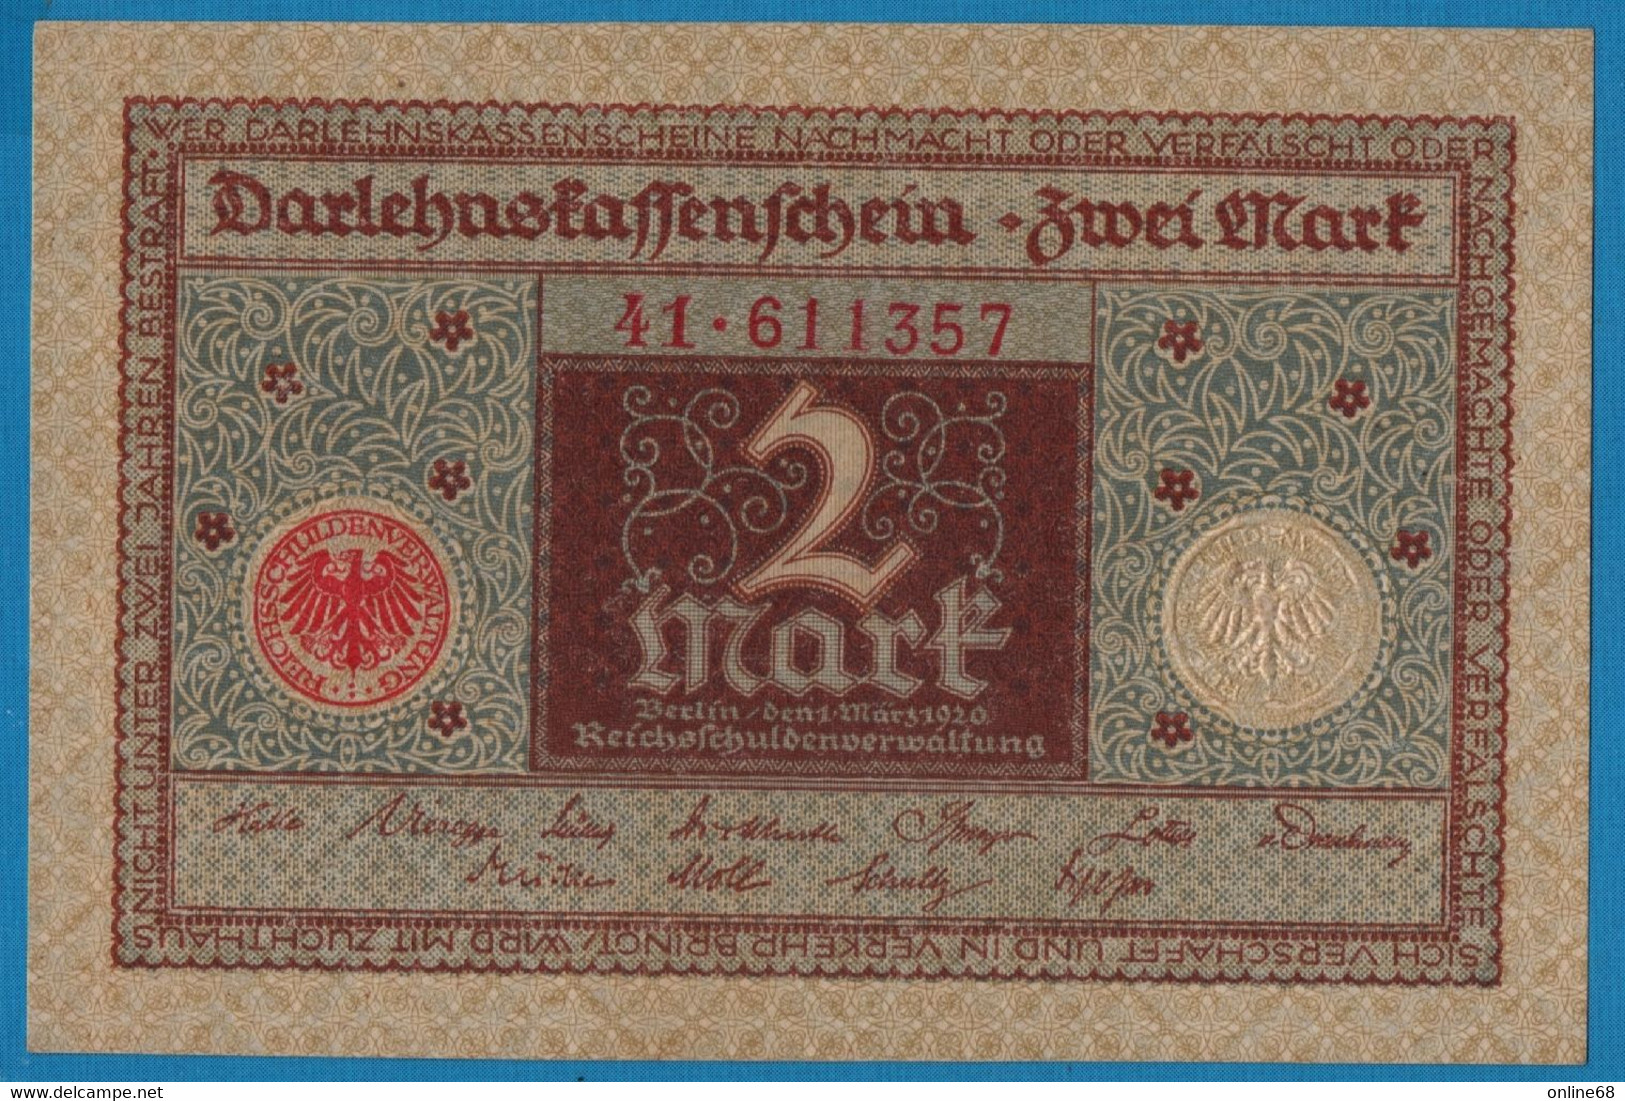 DEUTSCHES REICH 2 MARK 01.03.1920  # 41.611357 P# 60  DARLEHENSKASSENSCHEIN - Reichsschuldenverwaltung